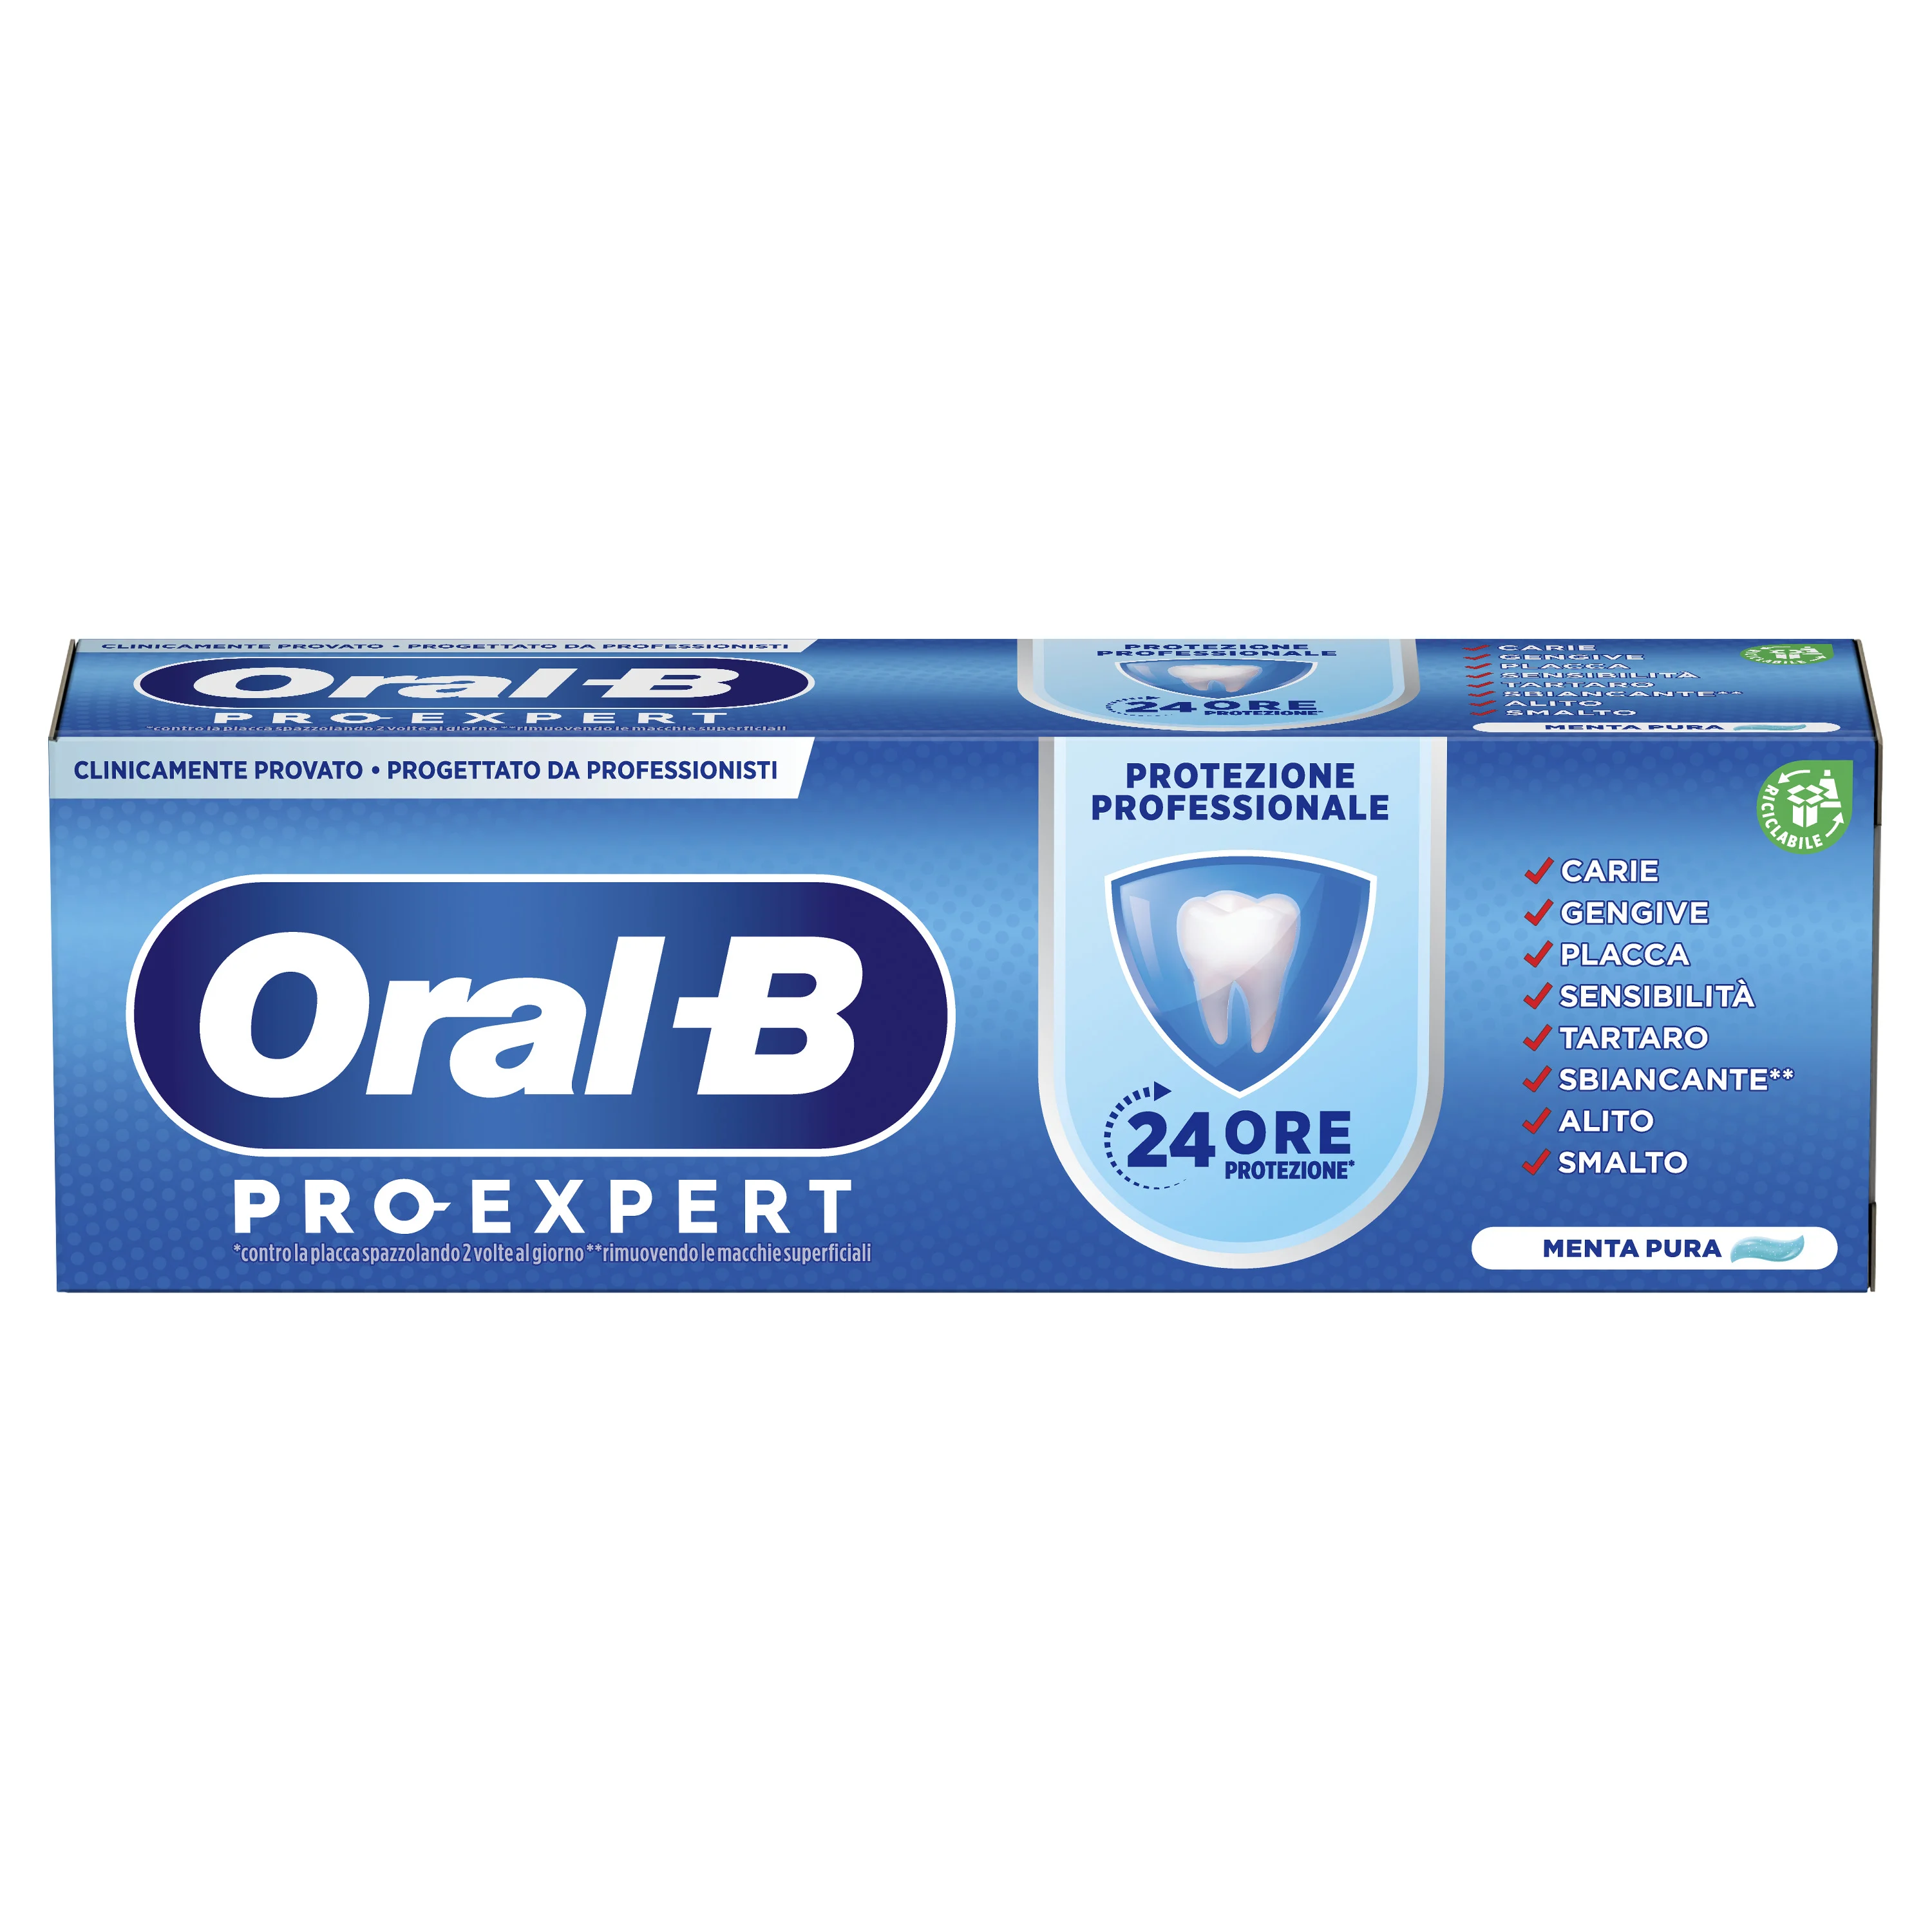 Oral-B Dentifricio Pro-Expert Protezione Professionale 1 